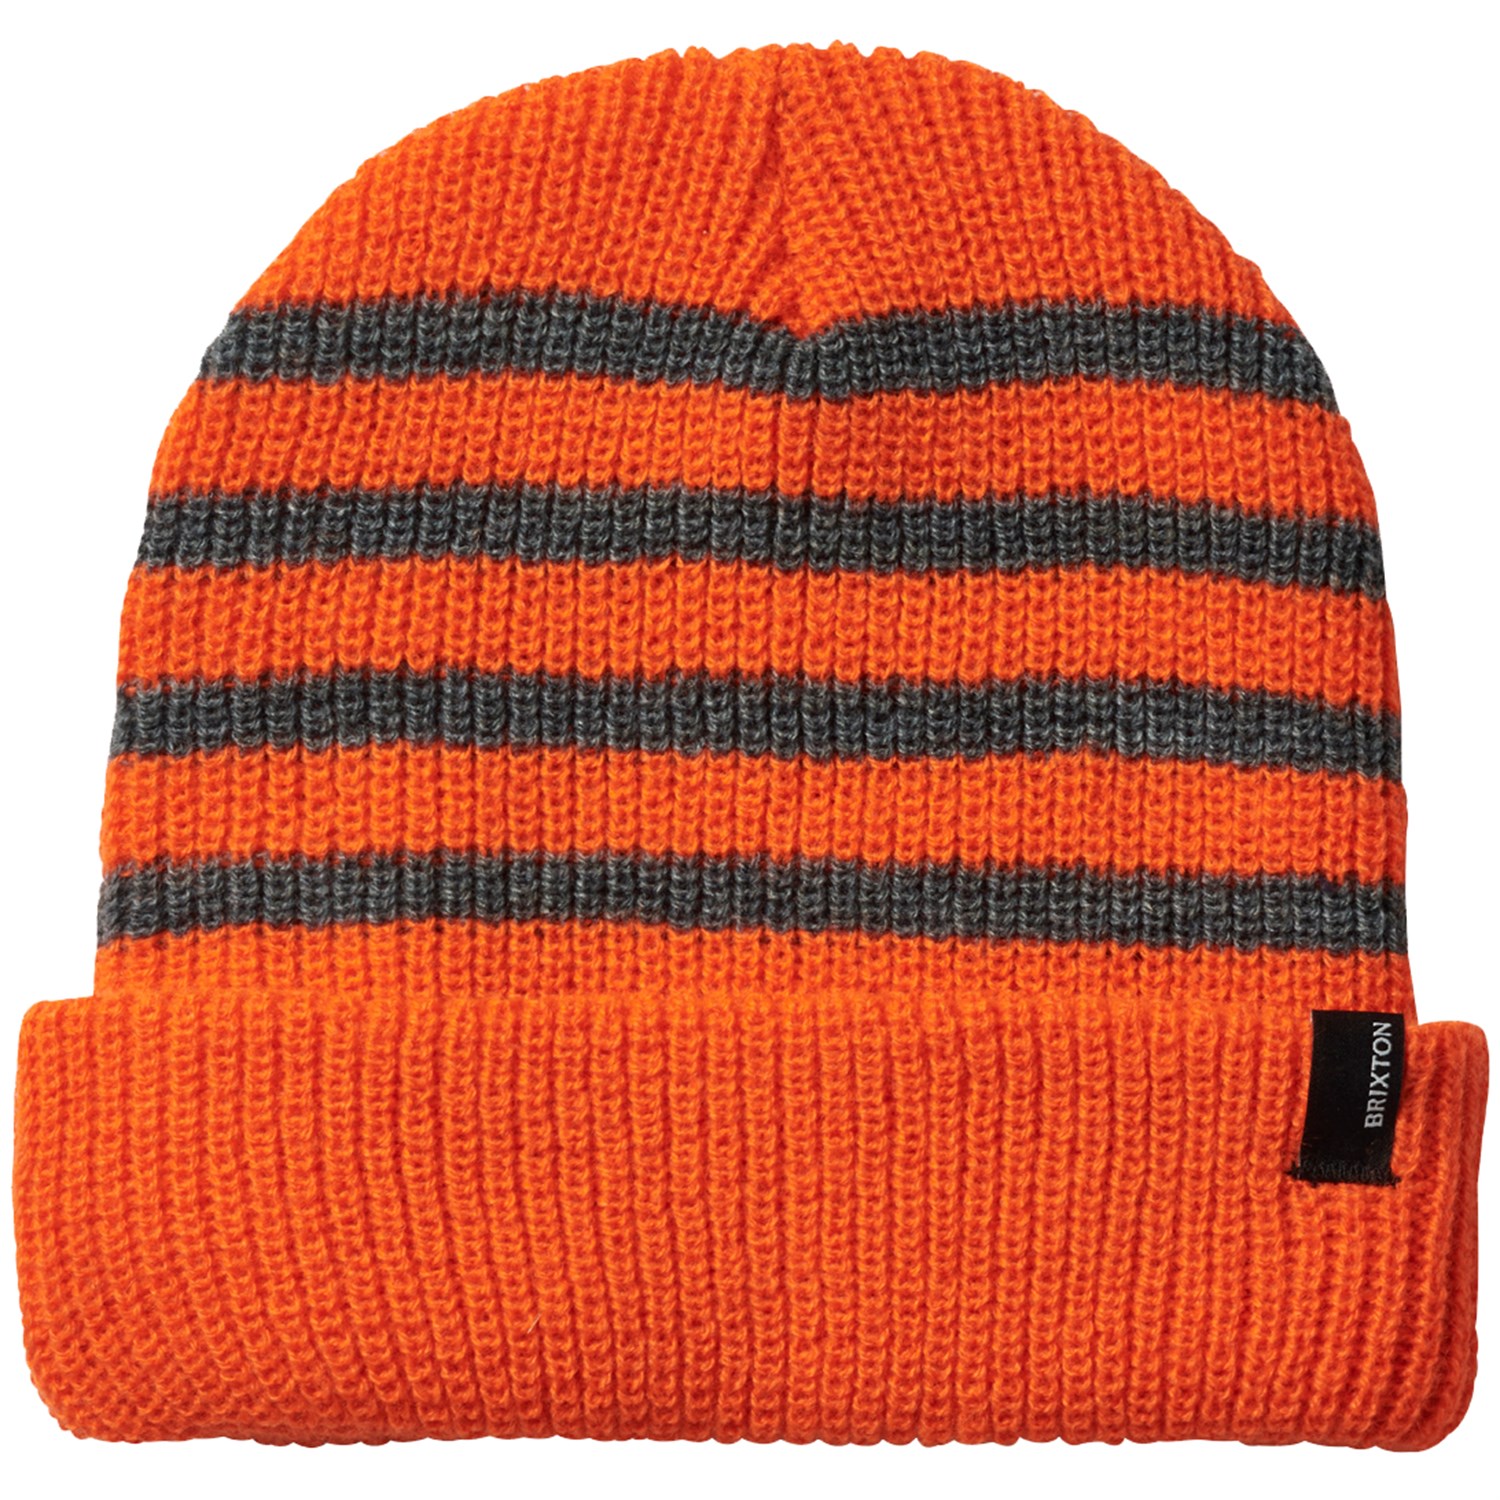 Шапка Brixton Heist, оранжевый шапка для мальчиков оранжевый